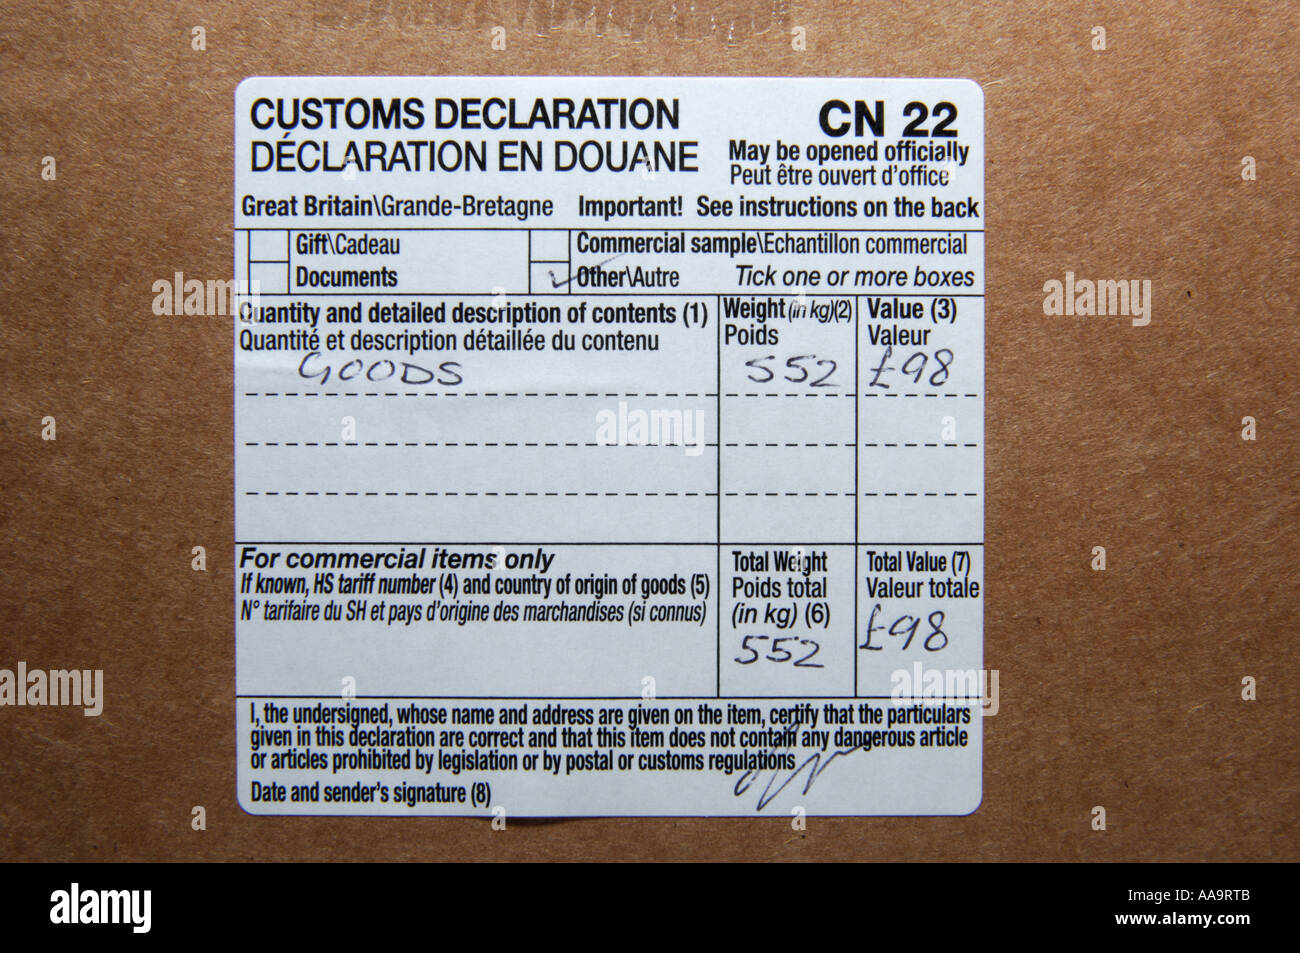 étiquette de déclaration en douane Banque de photographies et d'images à  haute résolution - Alamy